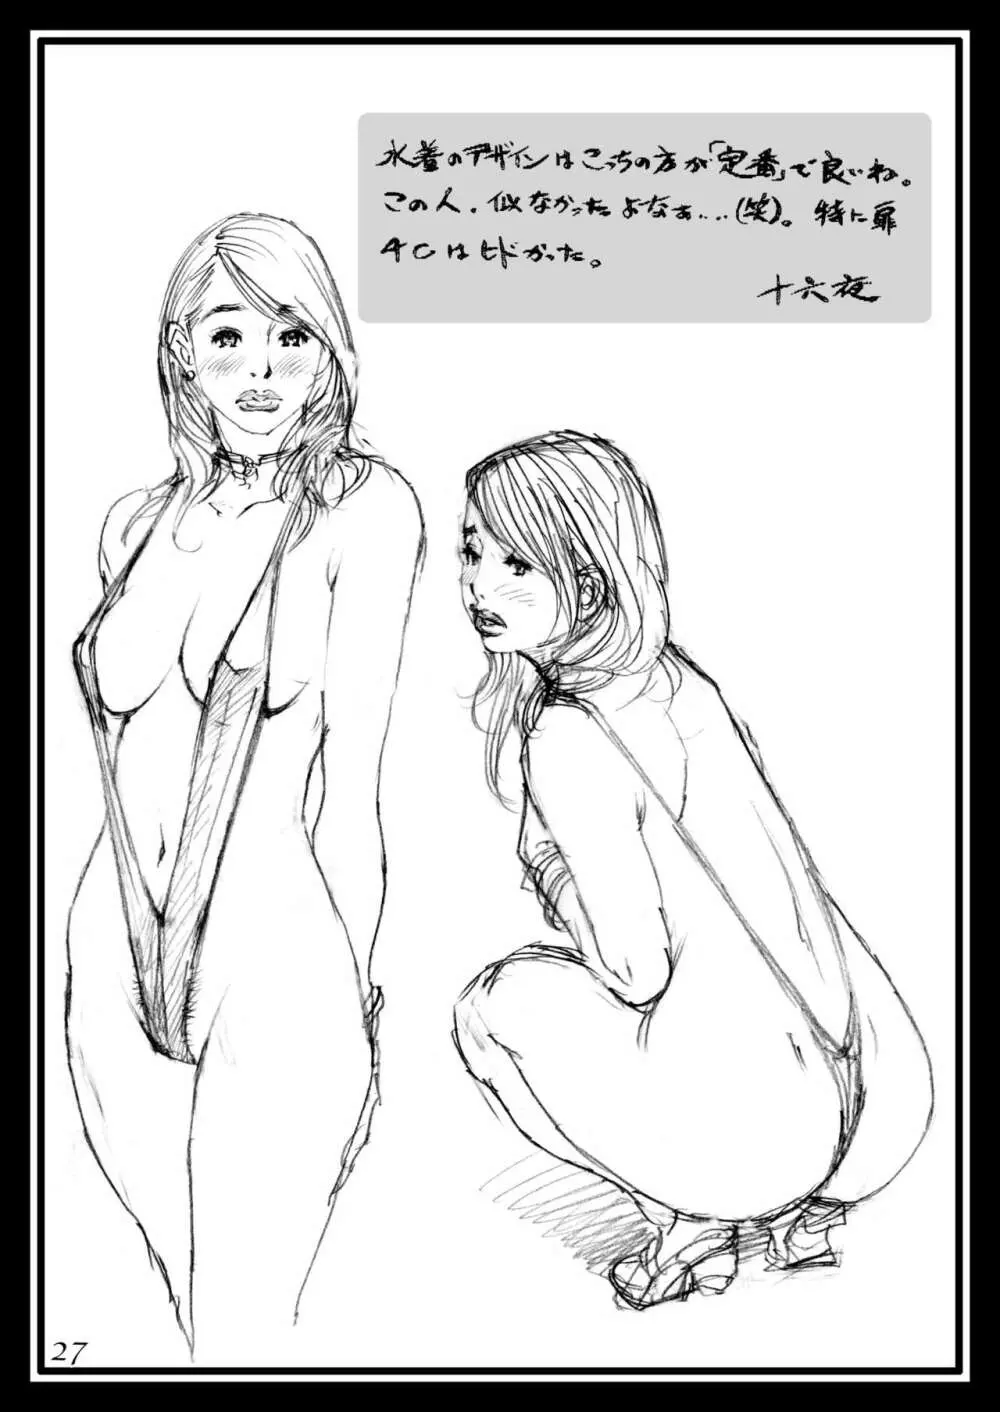 十六夜清心ラフ画集 in M女専科 26ページ